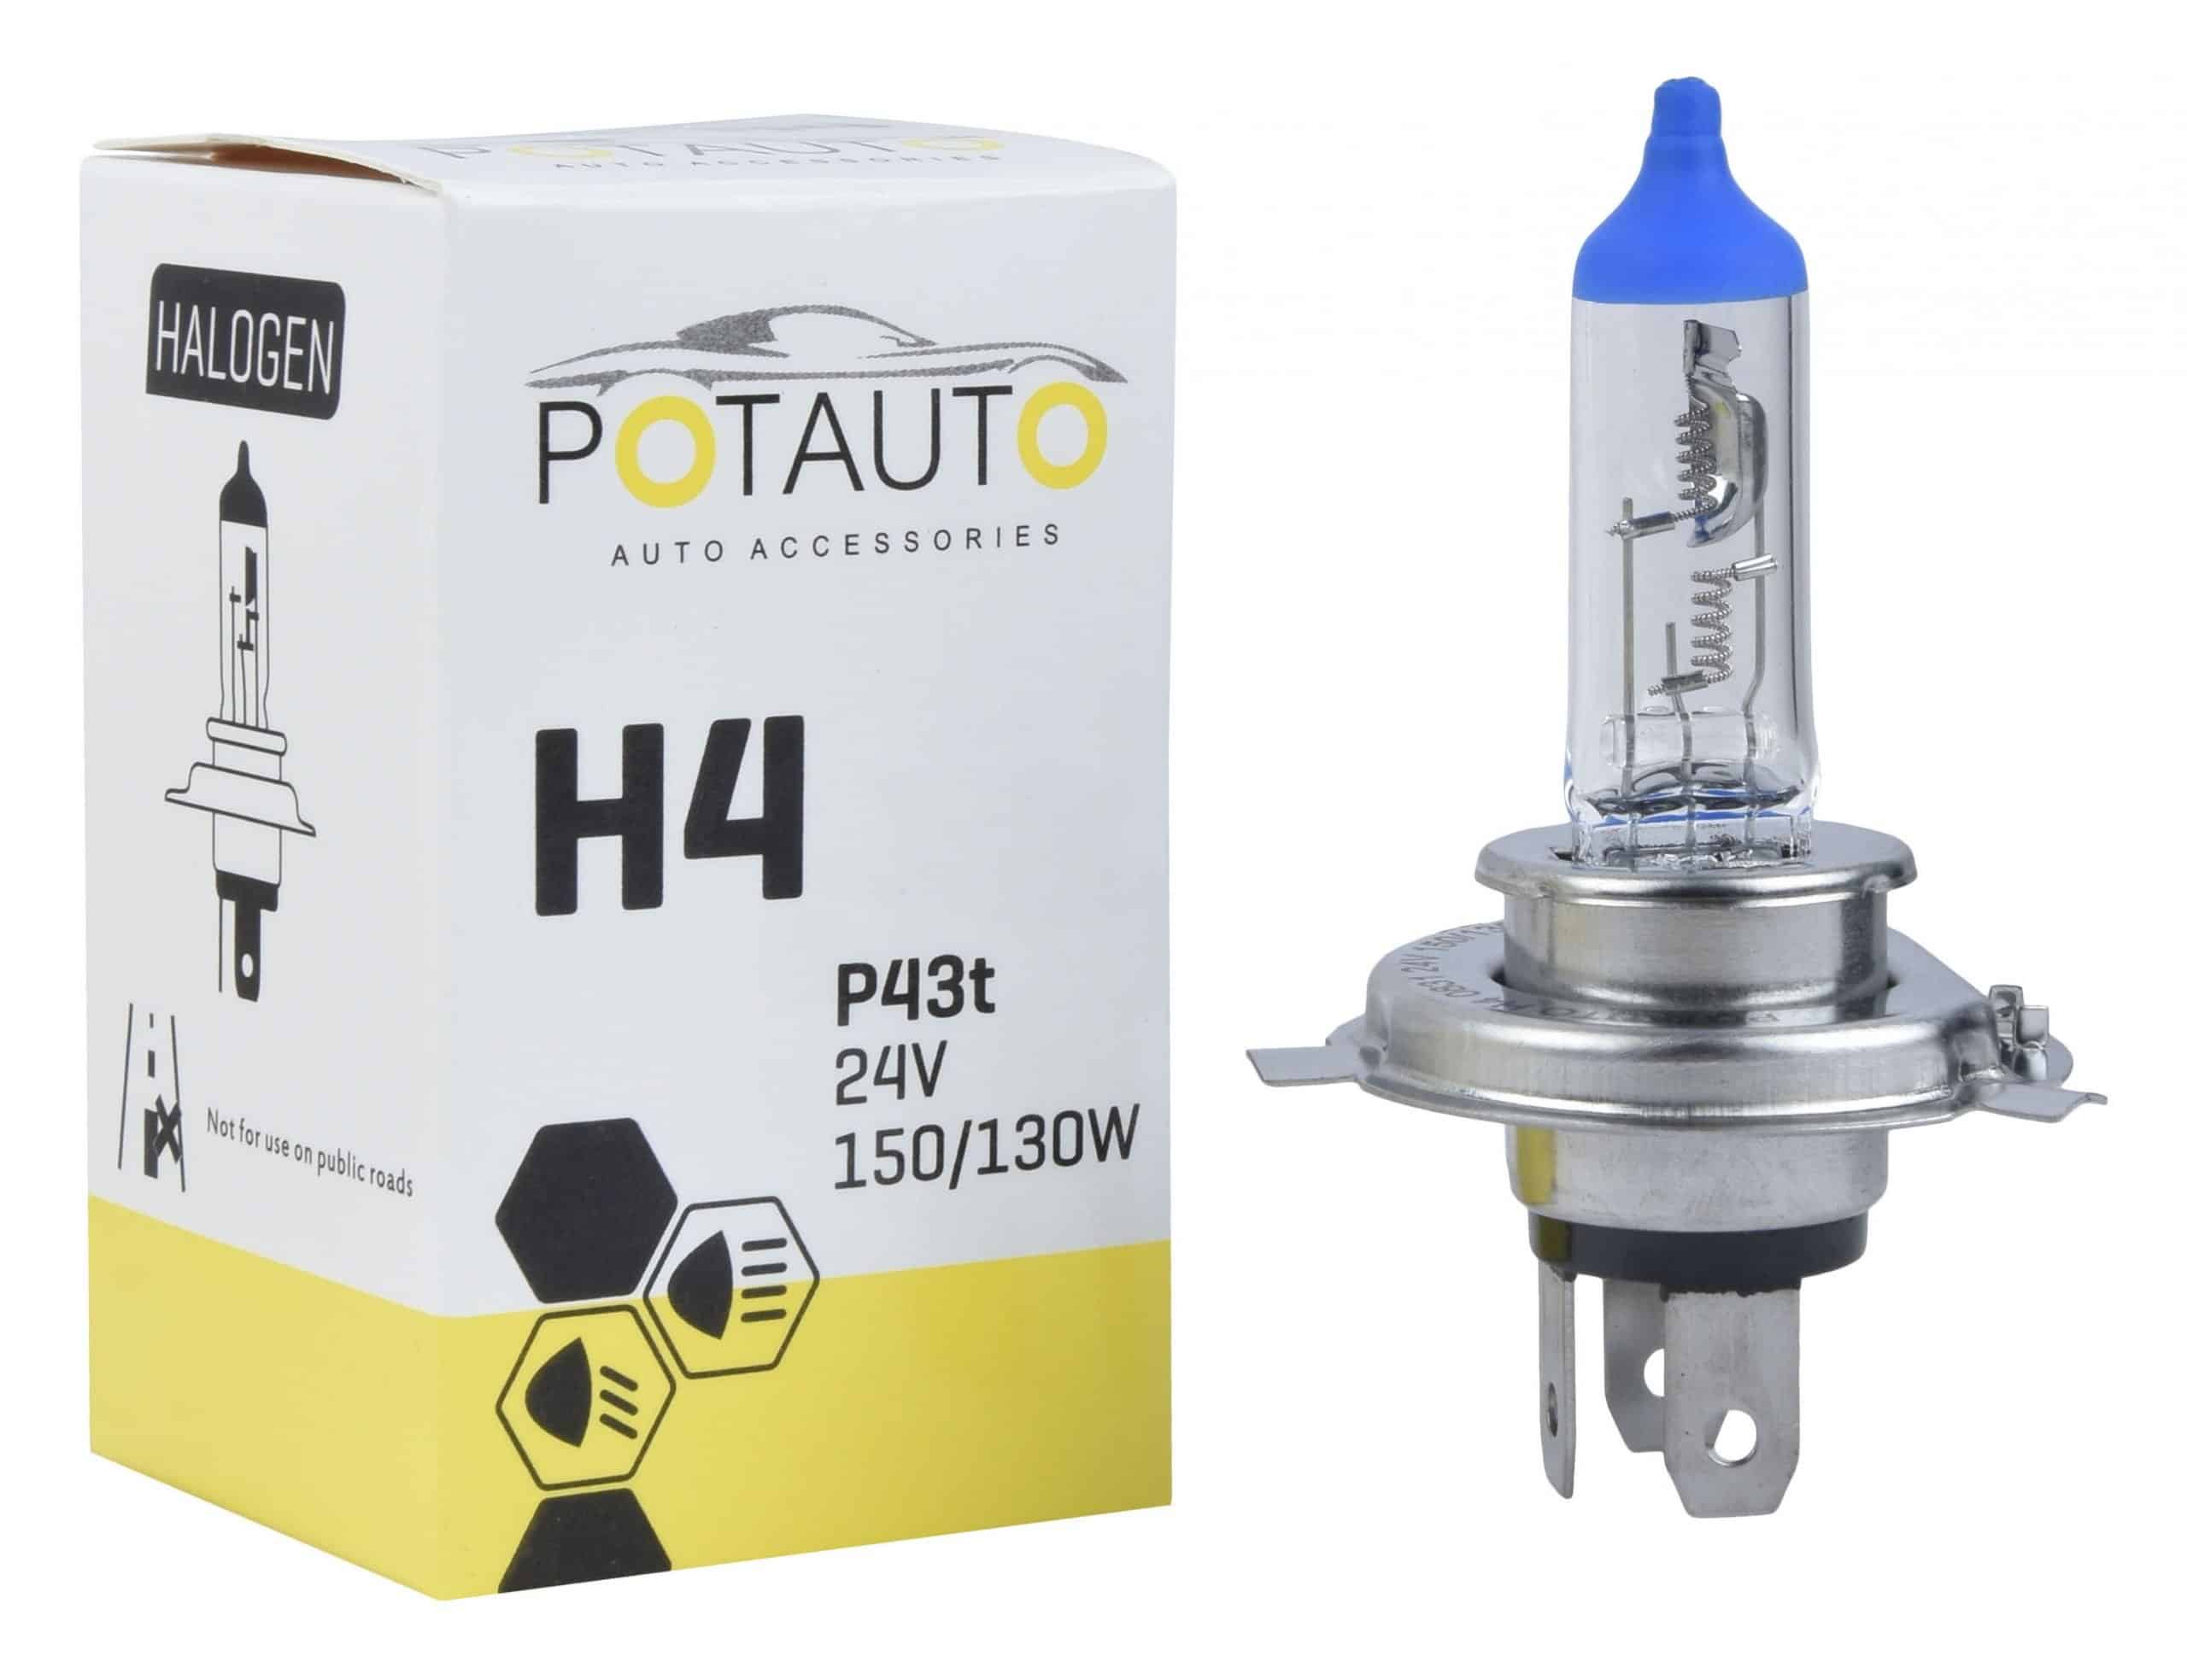 Potauto H4 Headlight Bulb P43t 24V 150/130W